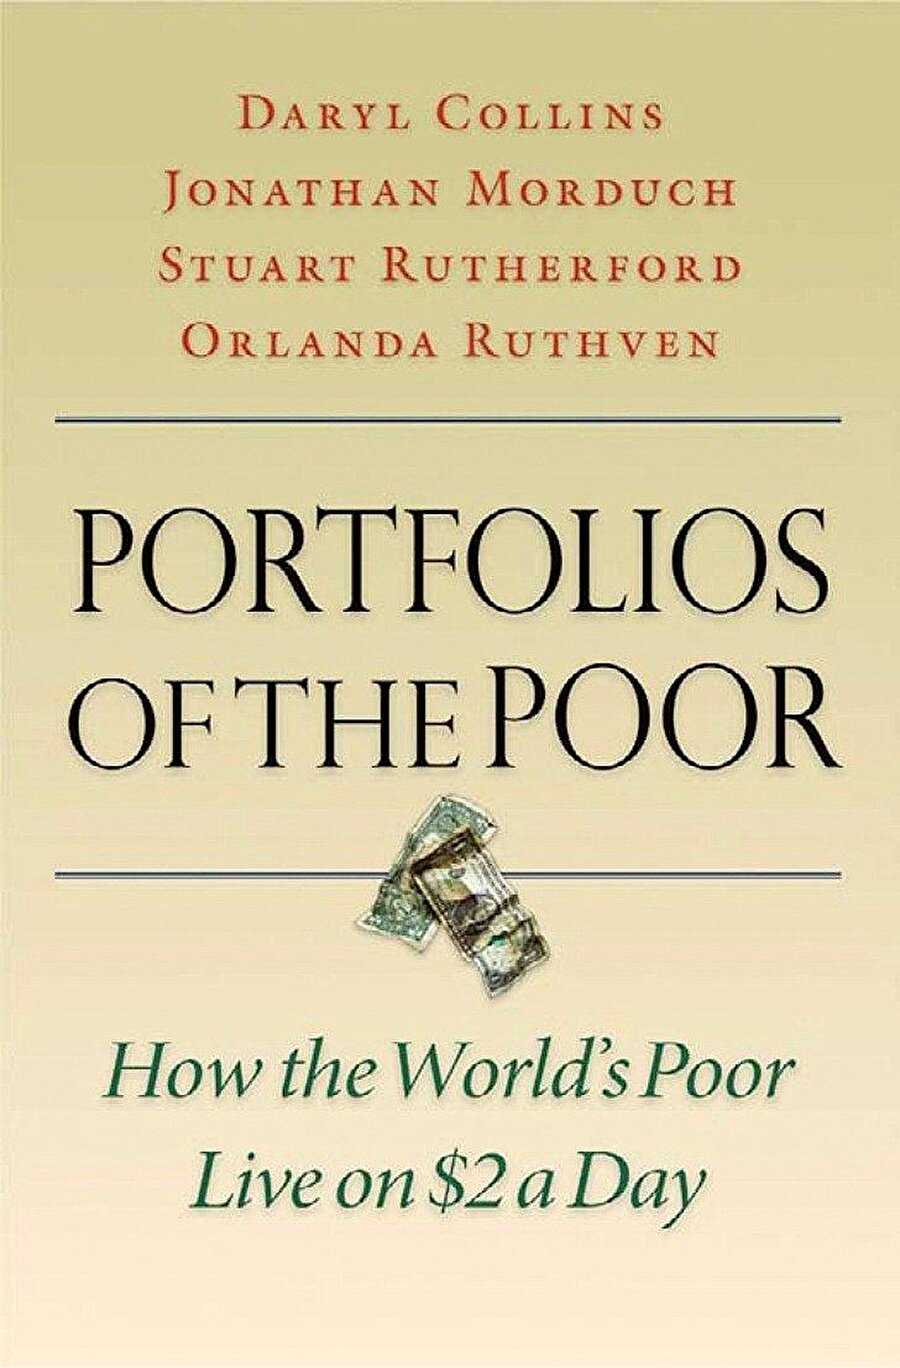 Mark Zuckerberg
Kitaplarla çok haşır neşir olan Mark Zuckerberg ise, Daryl Collins, Jonathan Morduch, Stuart Rutherford ve Orlanda Ruthven - "Portfolios of the Poor" kitabını öneriyor. https://www.amazon.com/Portfol...